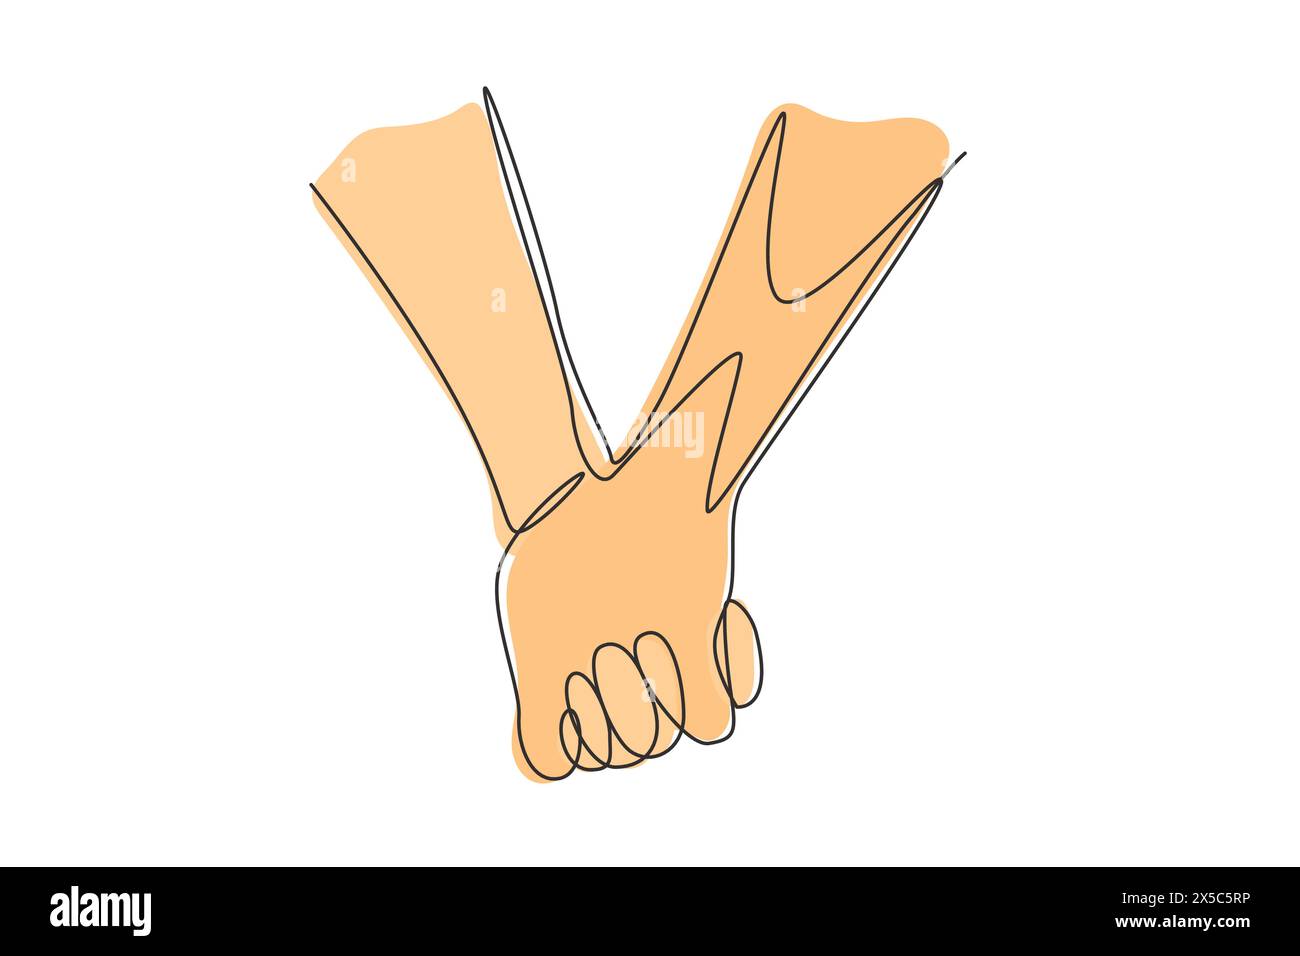 Linea continua che disegna due mani che si tengono l'una con l'altra. Segno o simbolo di amore, relazione, coppia, matrimonio. Comunicazione con i gesti delle mani. Si Illustrazione Vettoriale